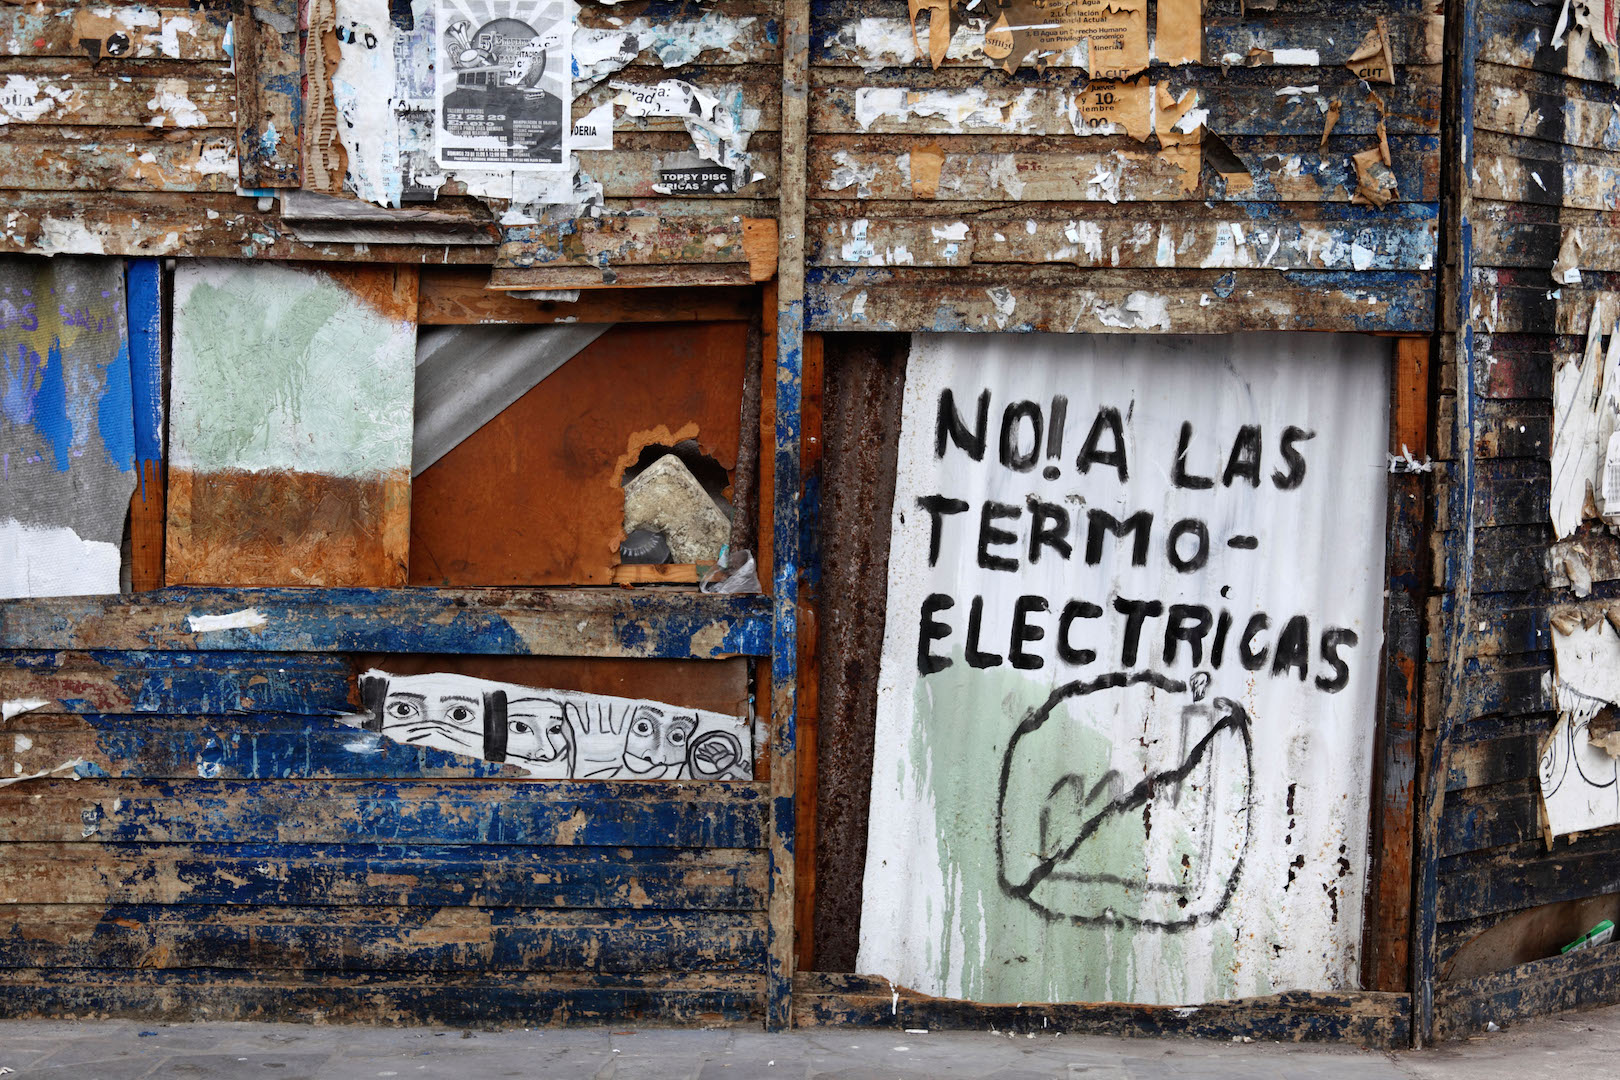 Graffiti protestando contra plano de construção de novas usinas termoelétricas